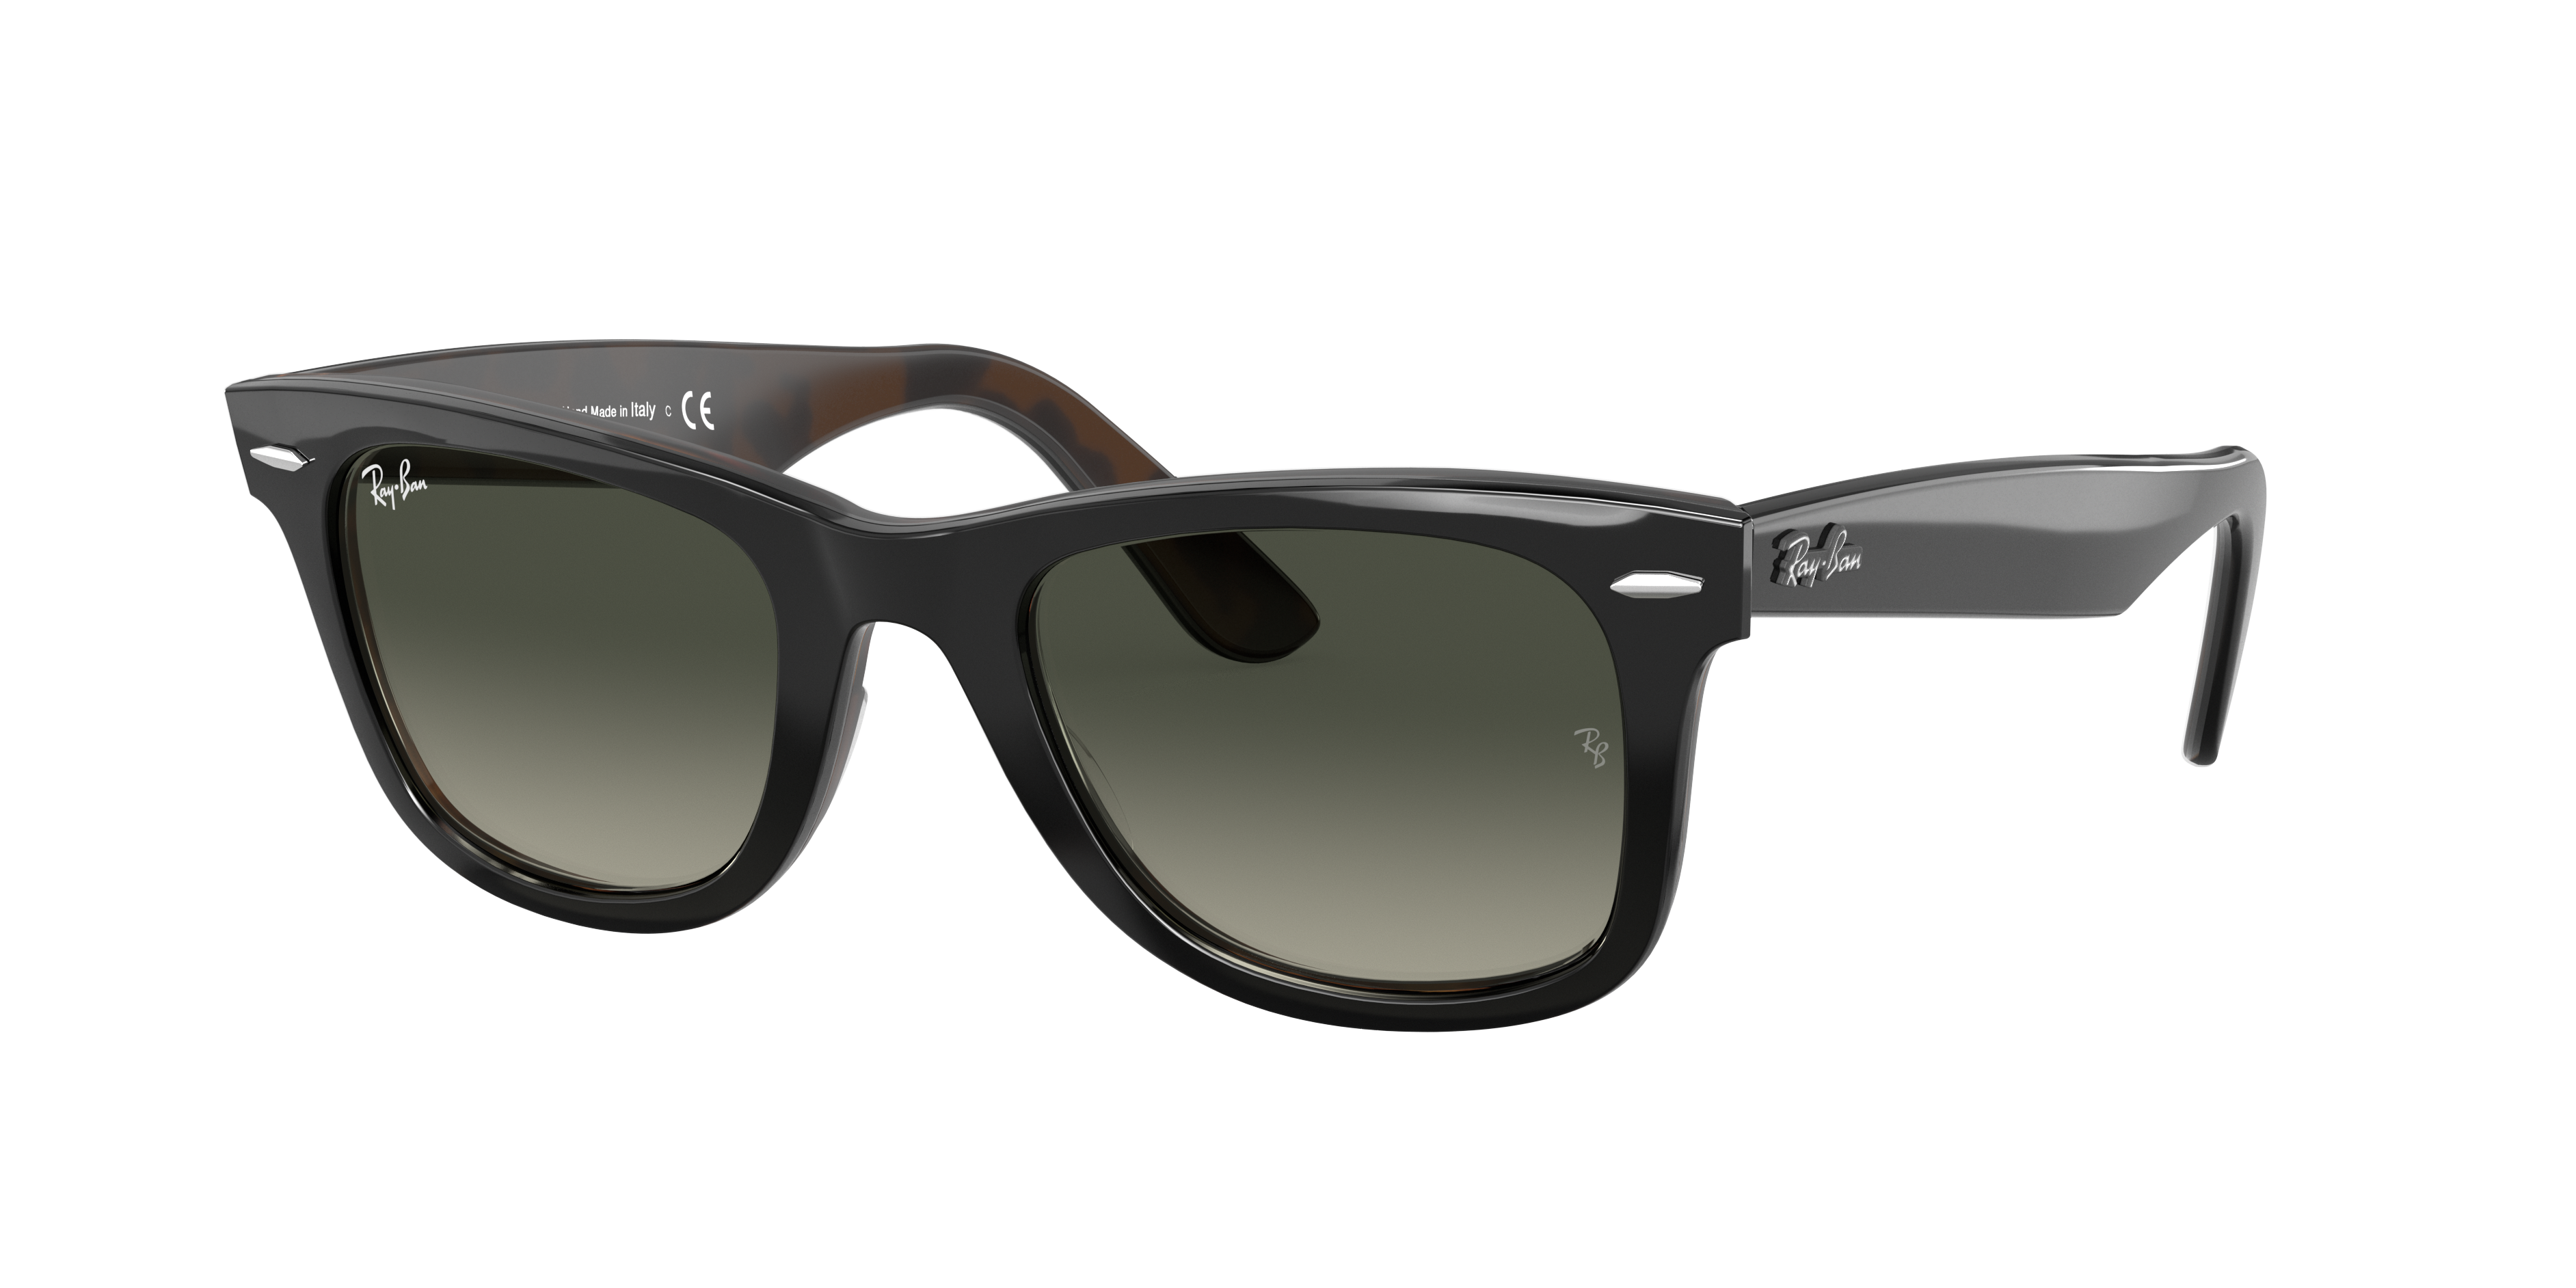 ray ban gray sunglasses